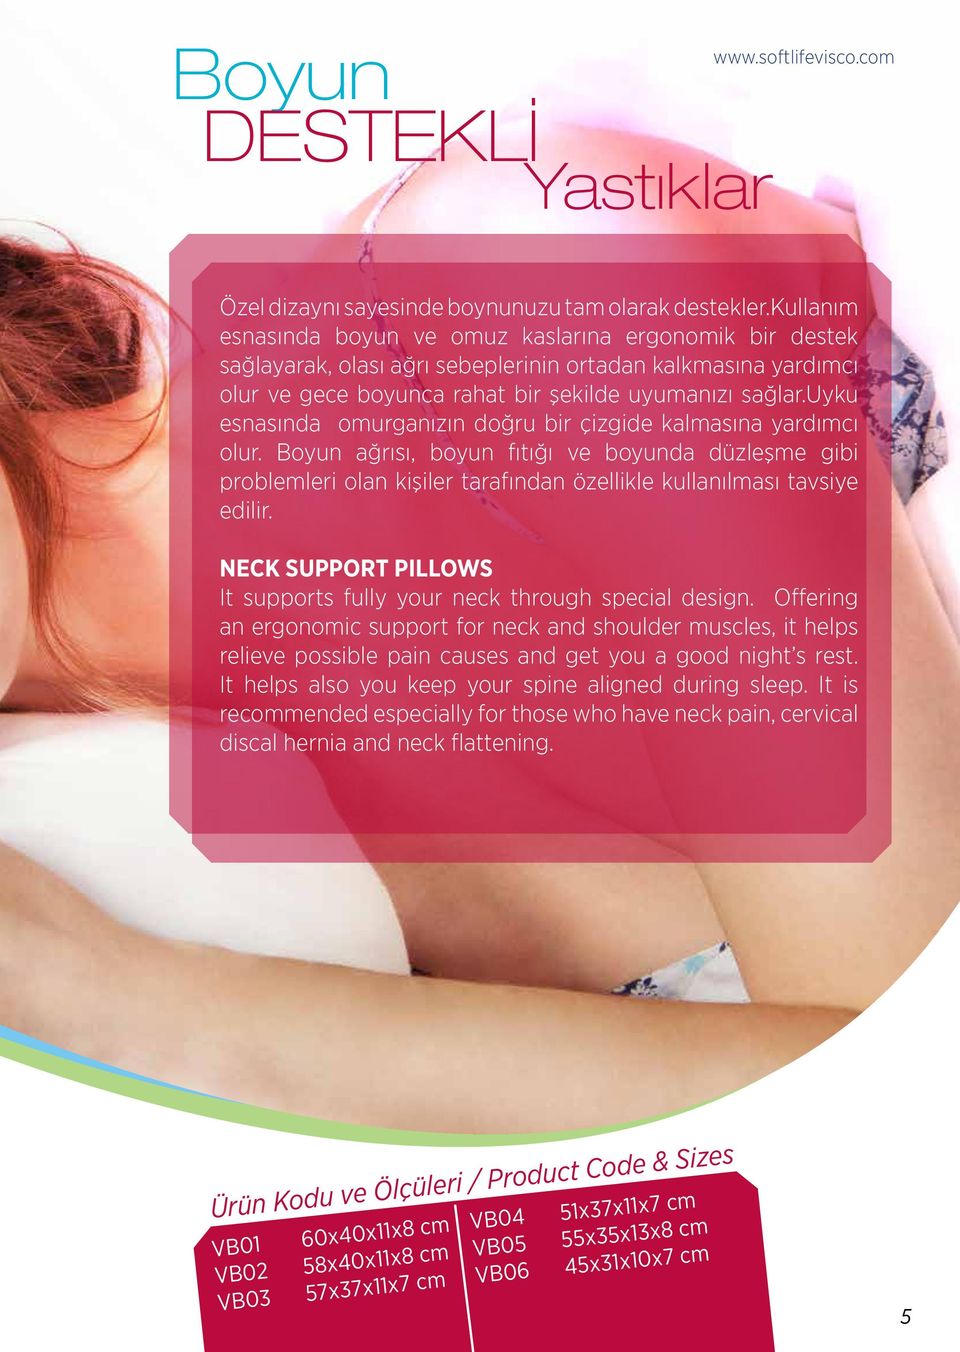 uyku esnasında omurganızın doğru bir çizgide kalmasına yardımcı olur. Boyun ağrısı, boyun fıtığı ve boyunda düzleşme gibi problemleri olan kişiler tarafından özellikle kullanılması tavsiye edilir.